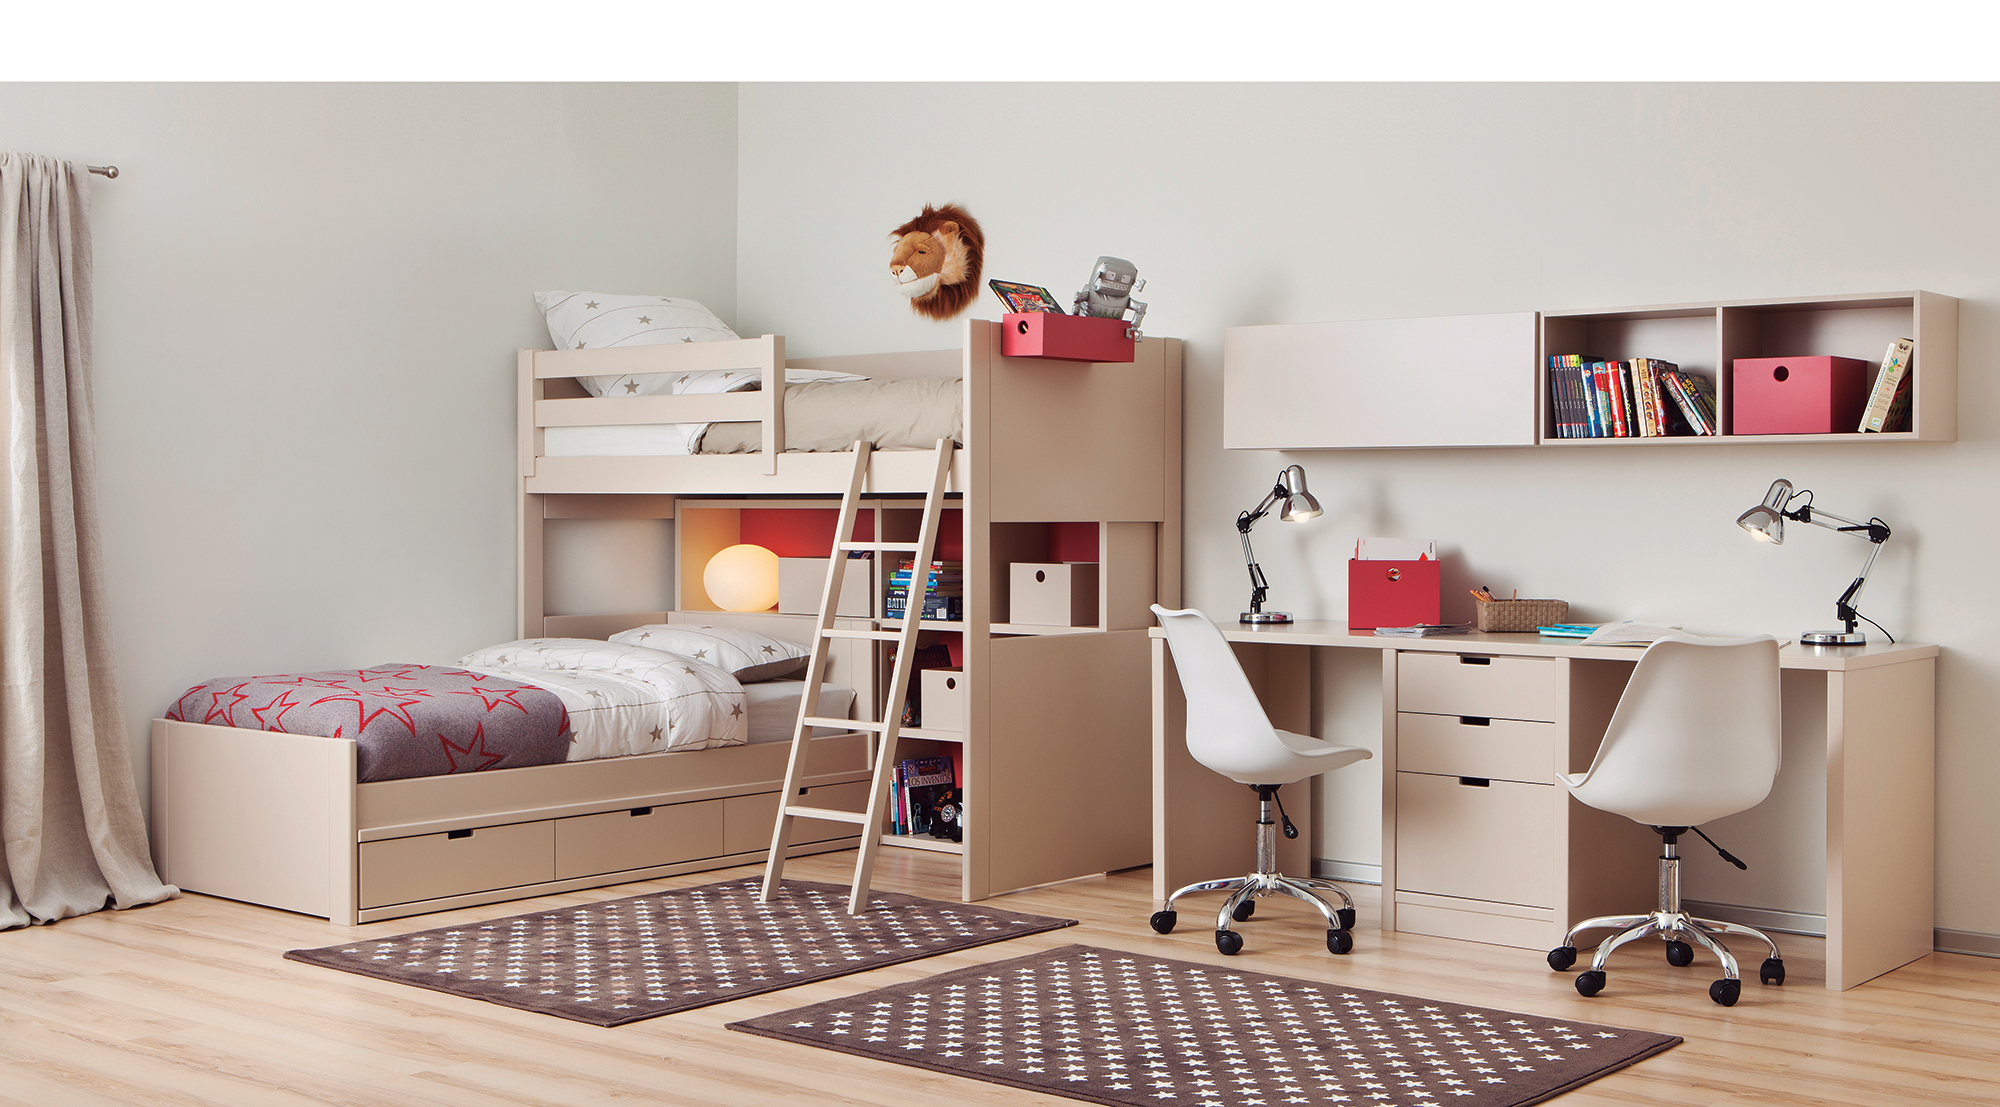 Le lit bureau, la solution maligne pour les chambres d'enfant